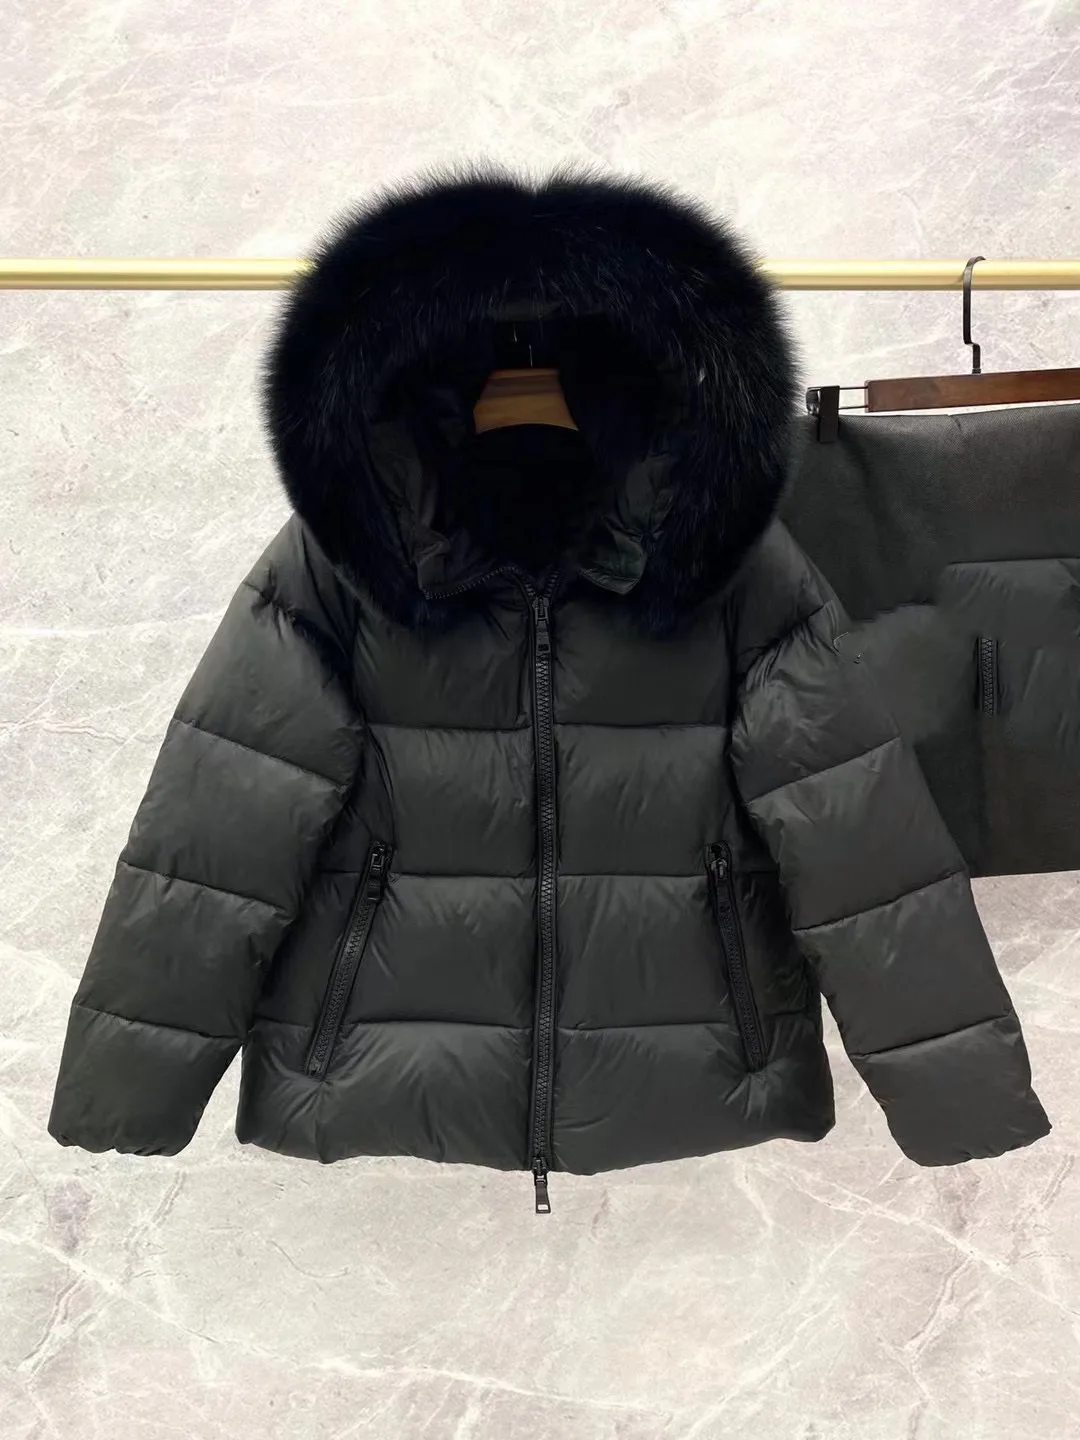 Short Hooded Down Jacket Women Winter 2022 Women's Luxury Warm Oversize Coat Female Fox Fur Collar White Duck Down Parkas enlarge